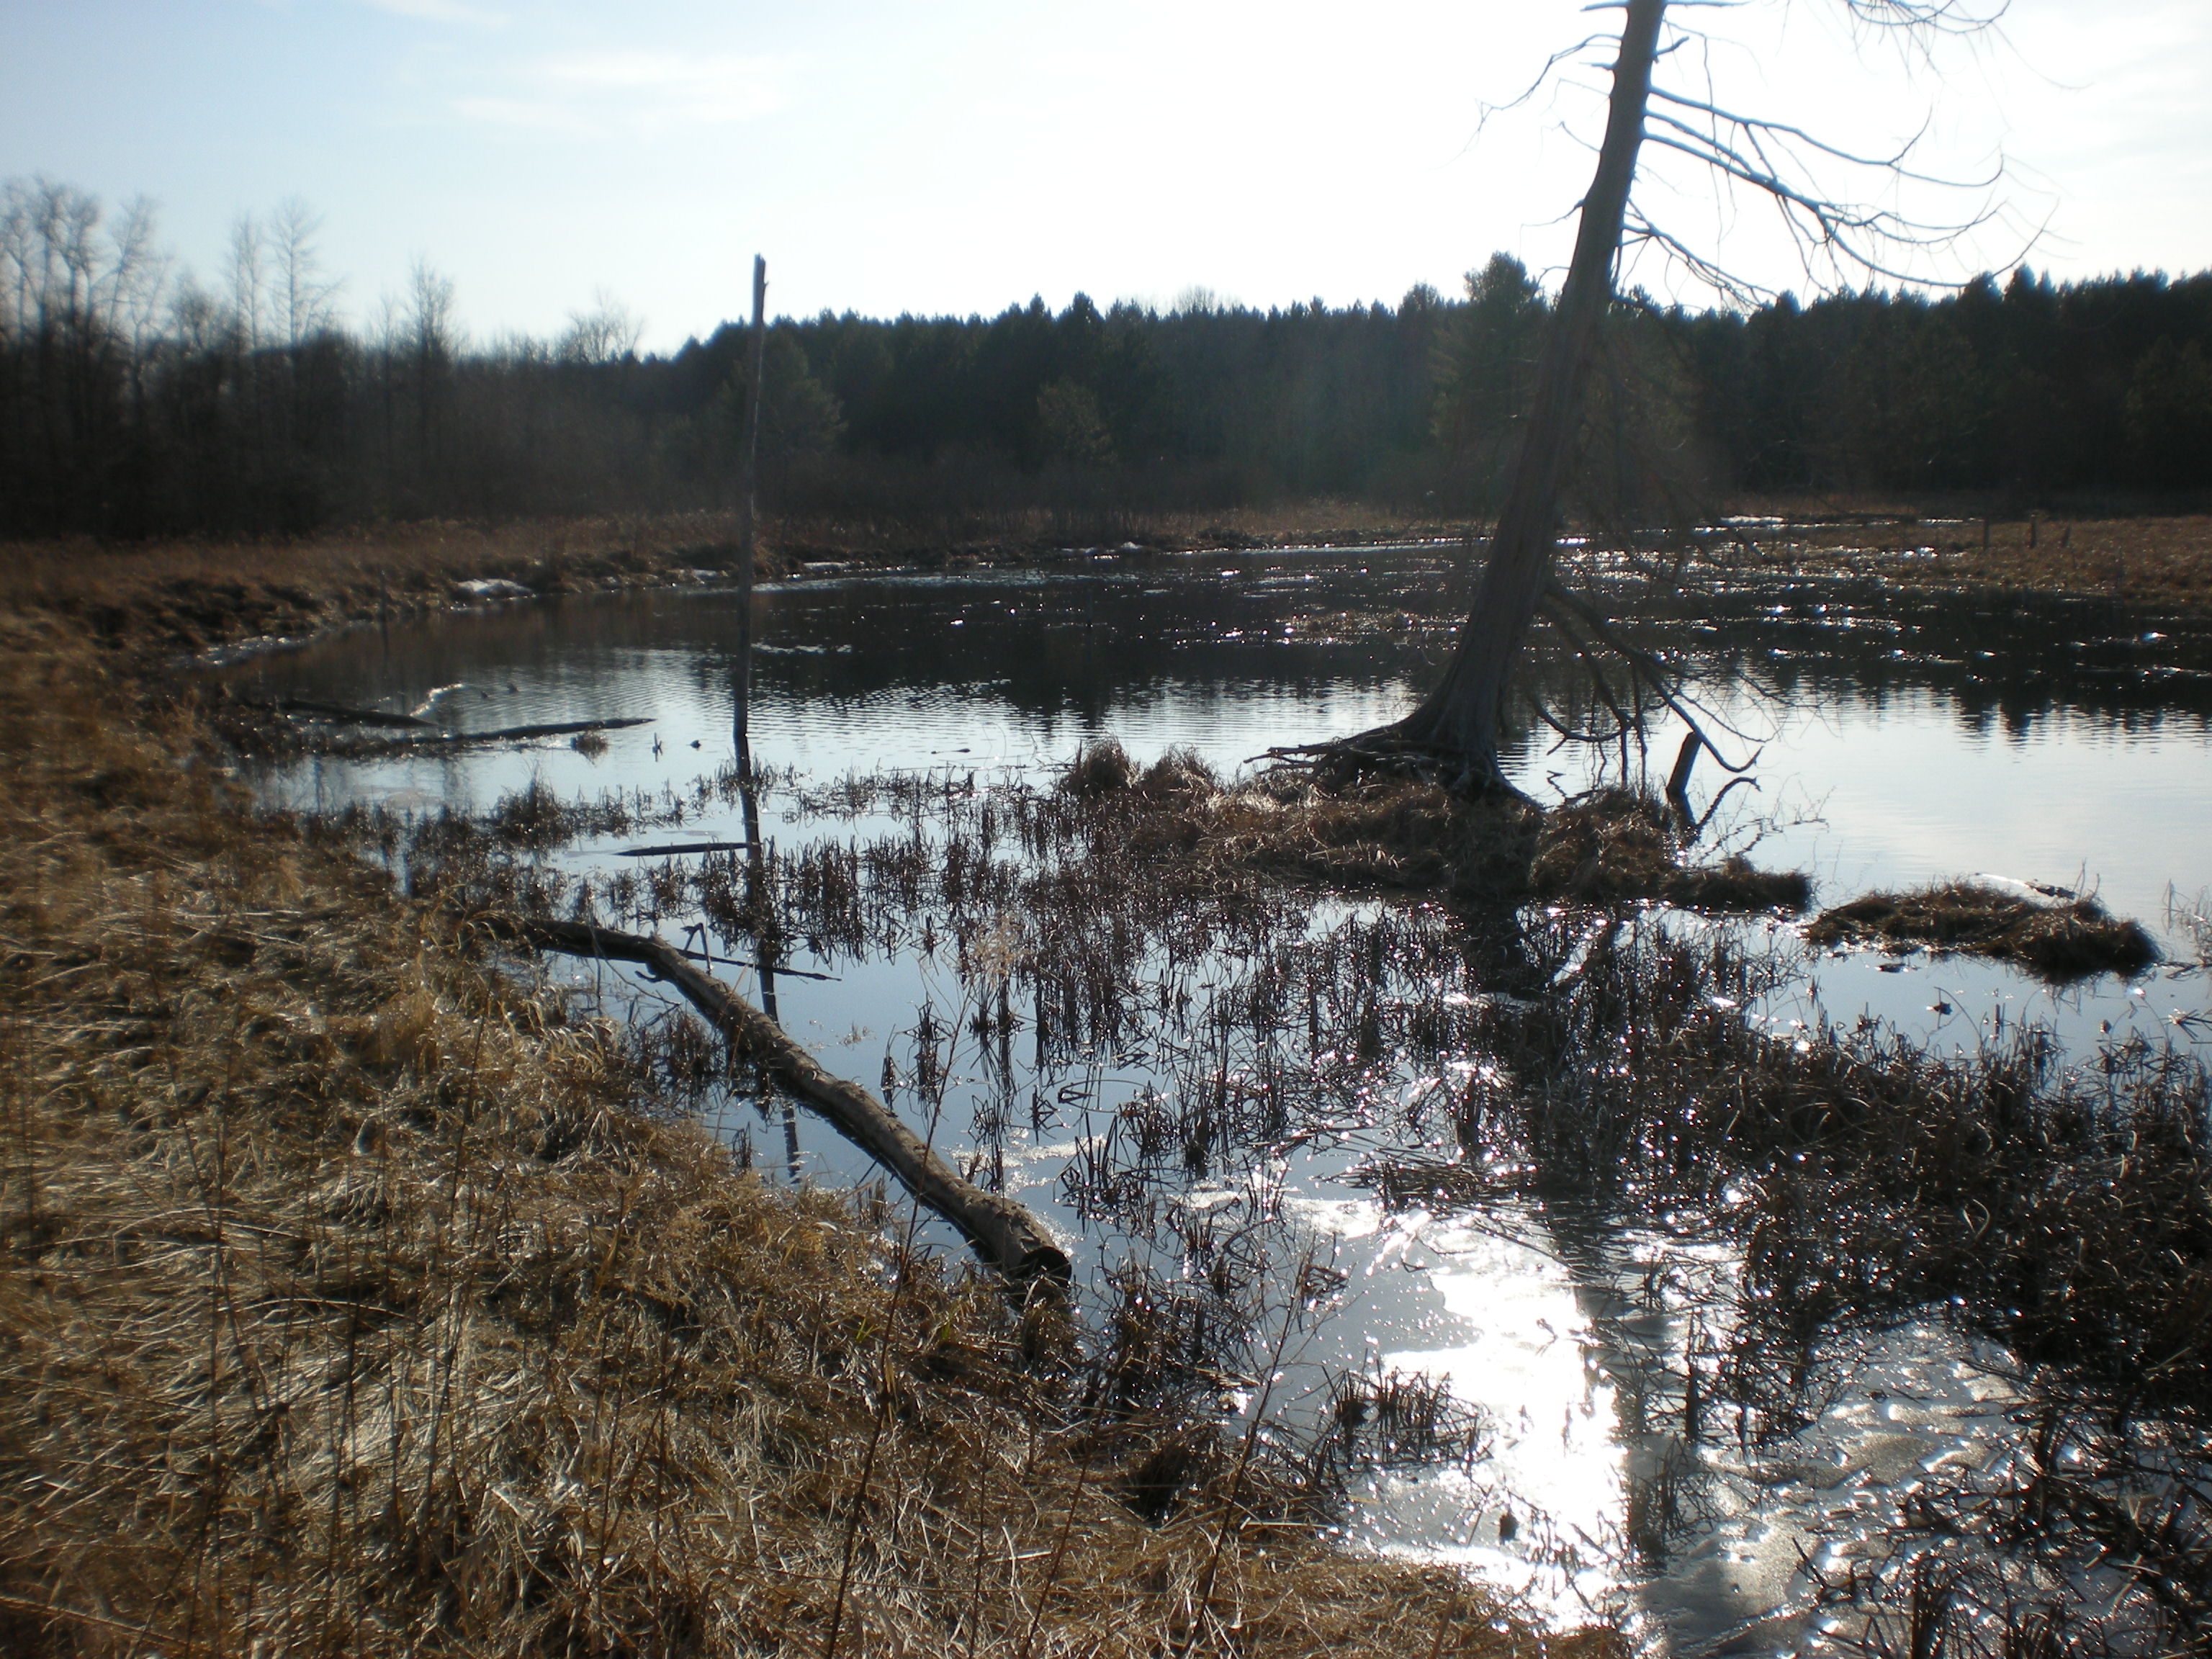 Clark's Marsh (was frozen last time I took pictures!)